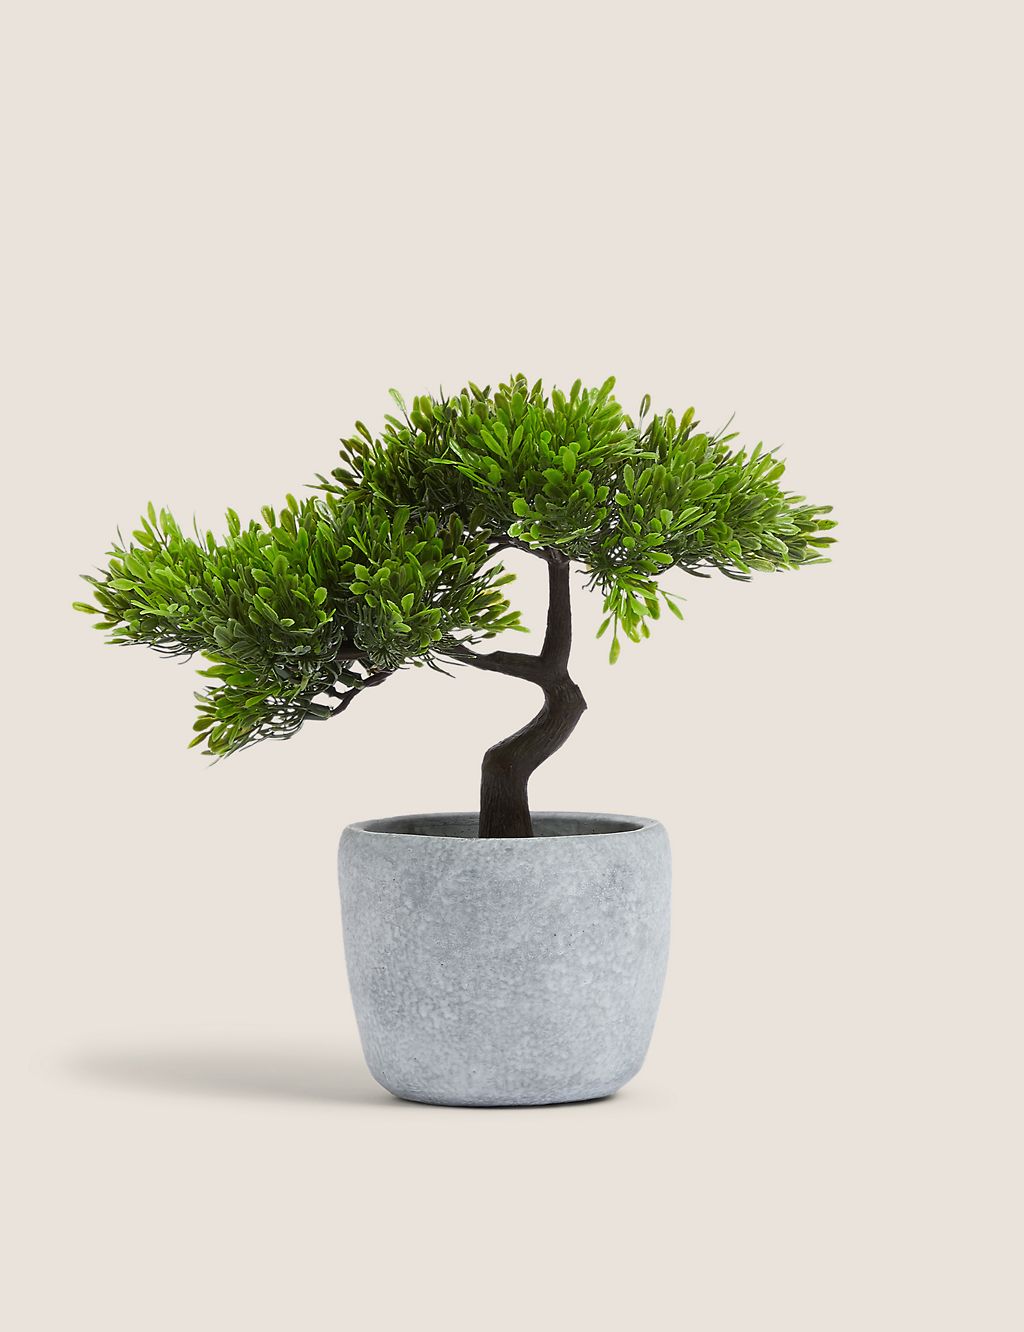 Artificial Bonsai Tree in Concrete Pot 3 of 4